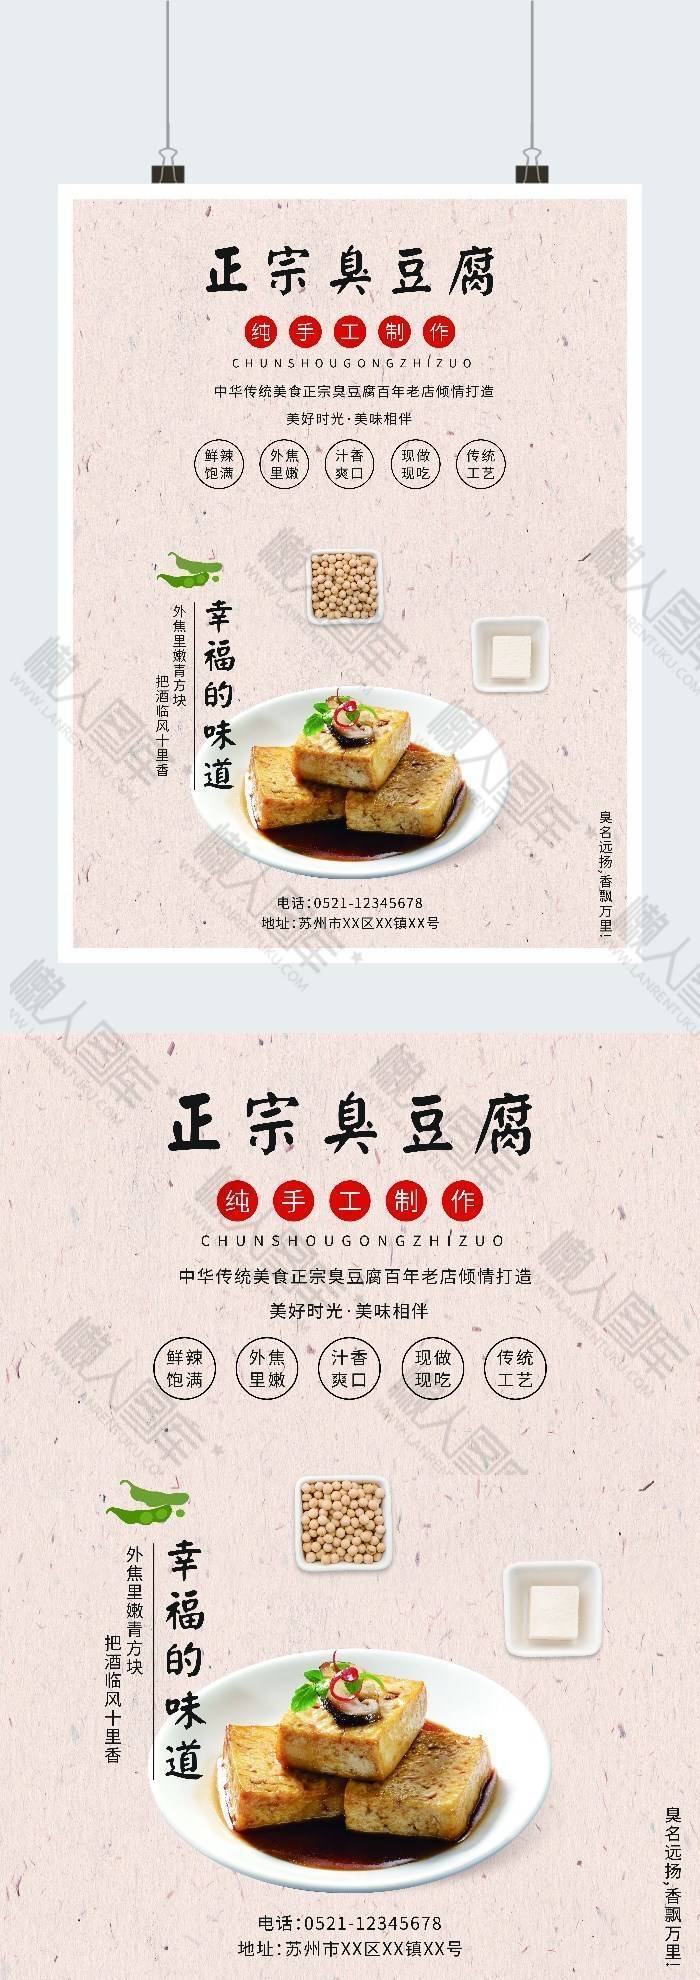 美食臭豆腐宣传海报